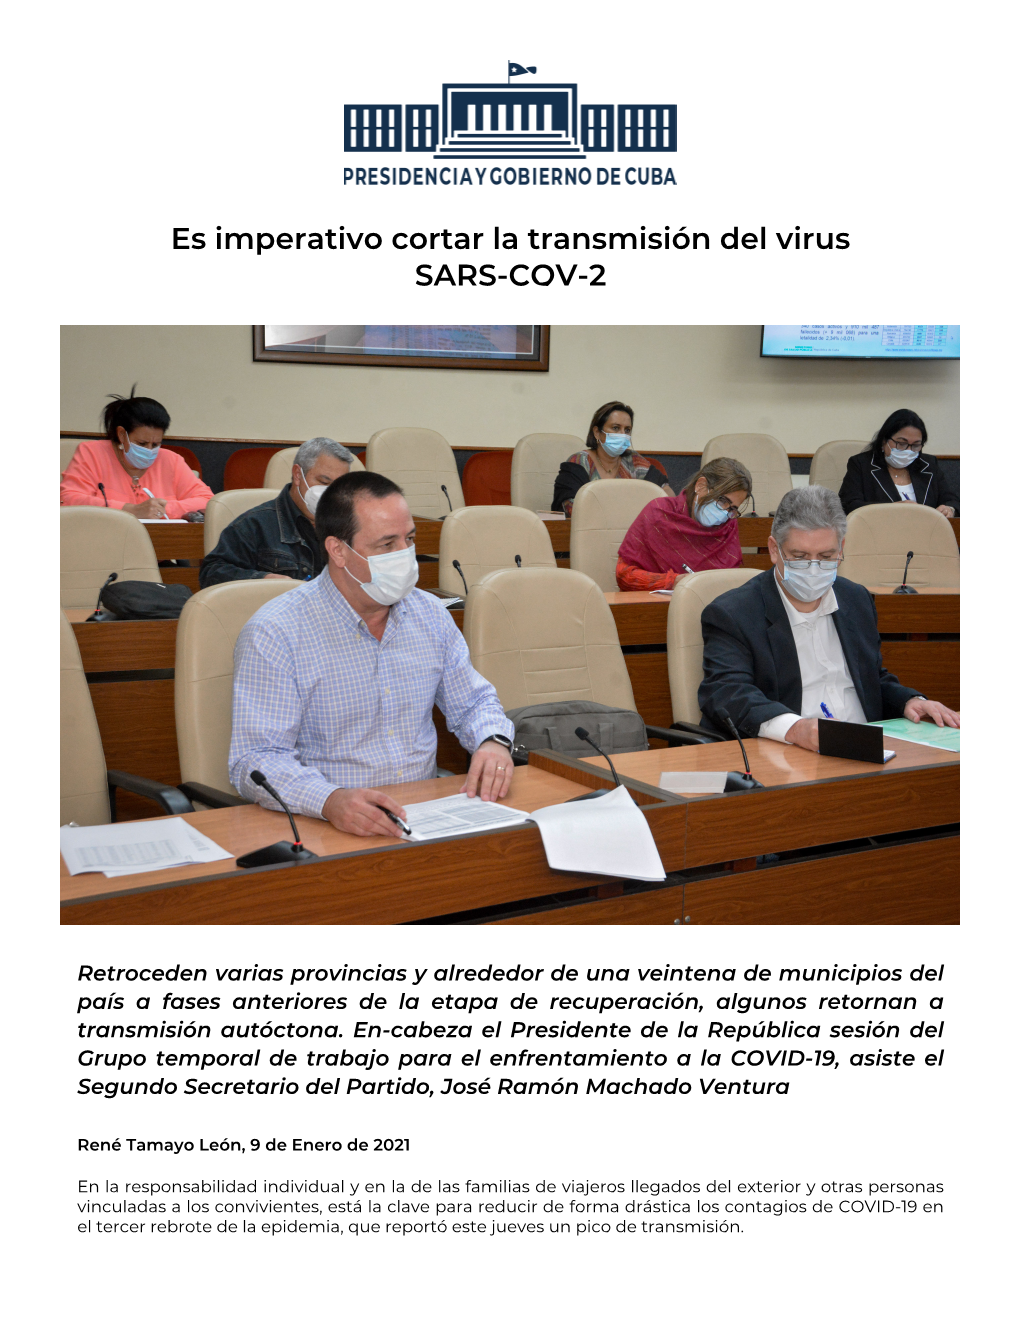 Es Imperativo Cortar La Transmisión Del Virus SARS-COV-2